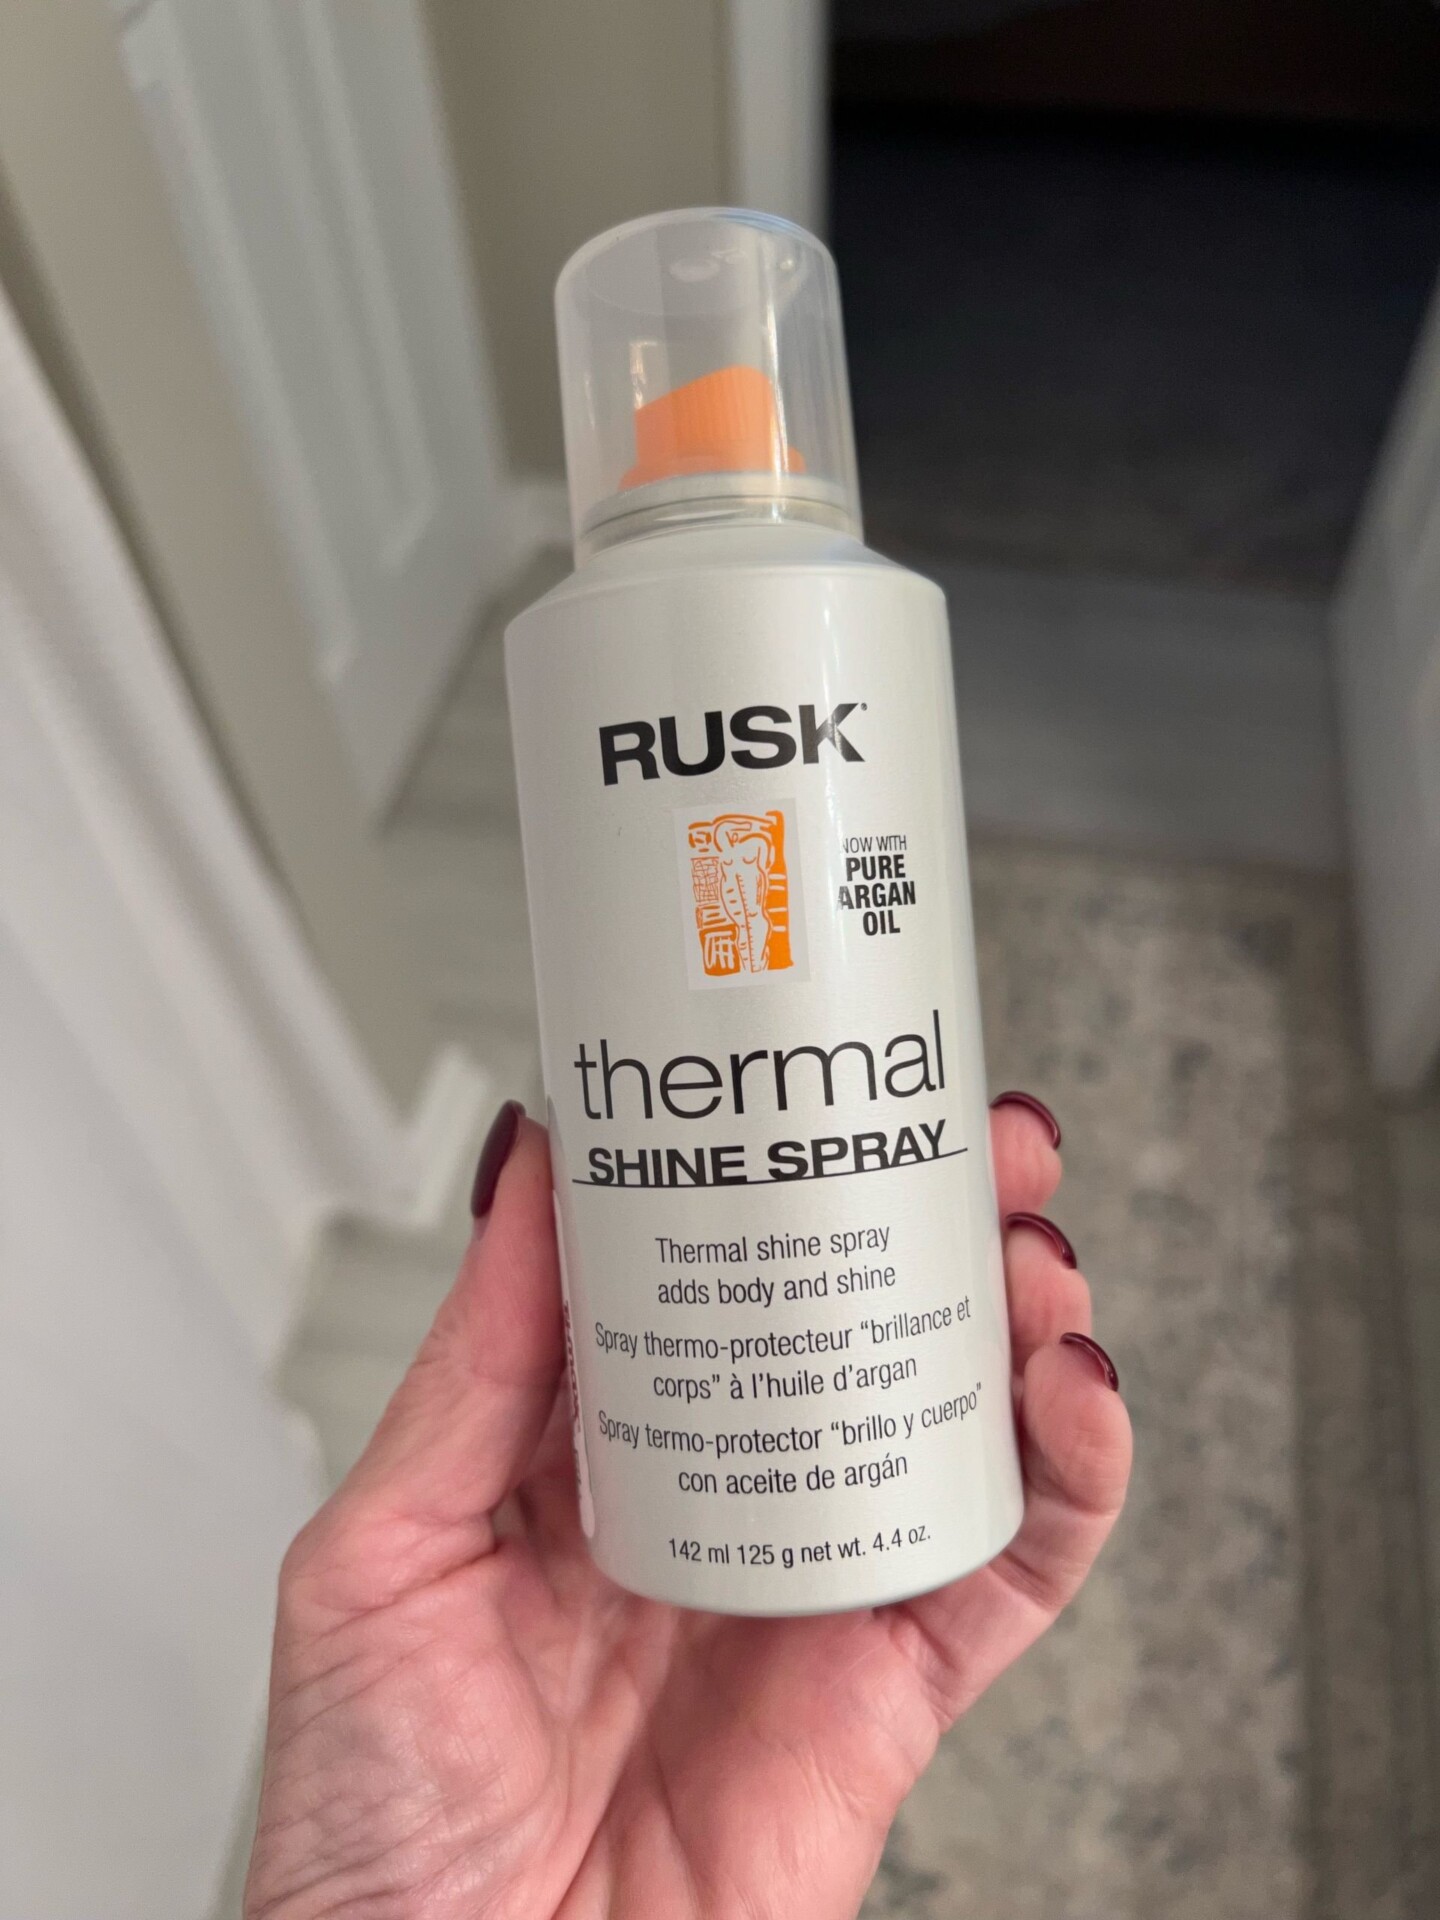 Rusk hair product